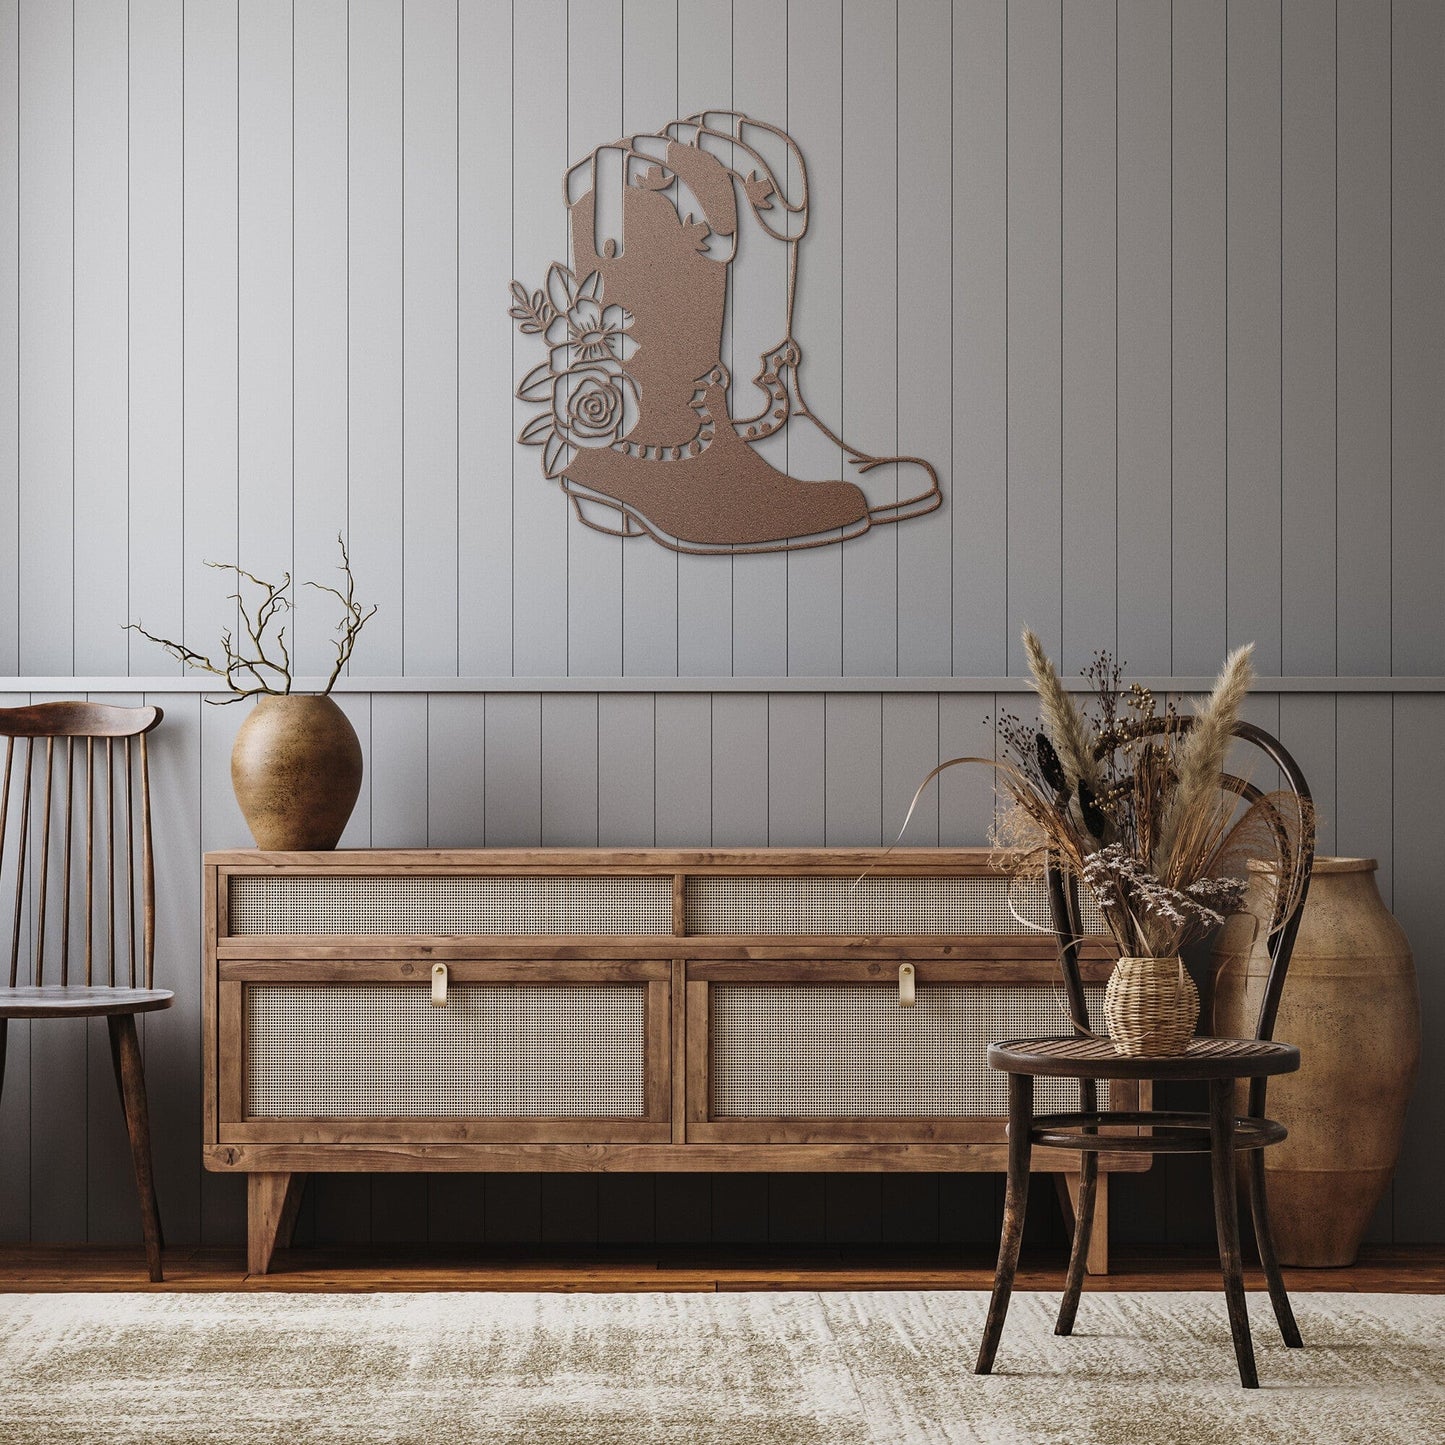 Floral Cowboy boots Decorative metal wall art